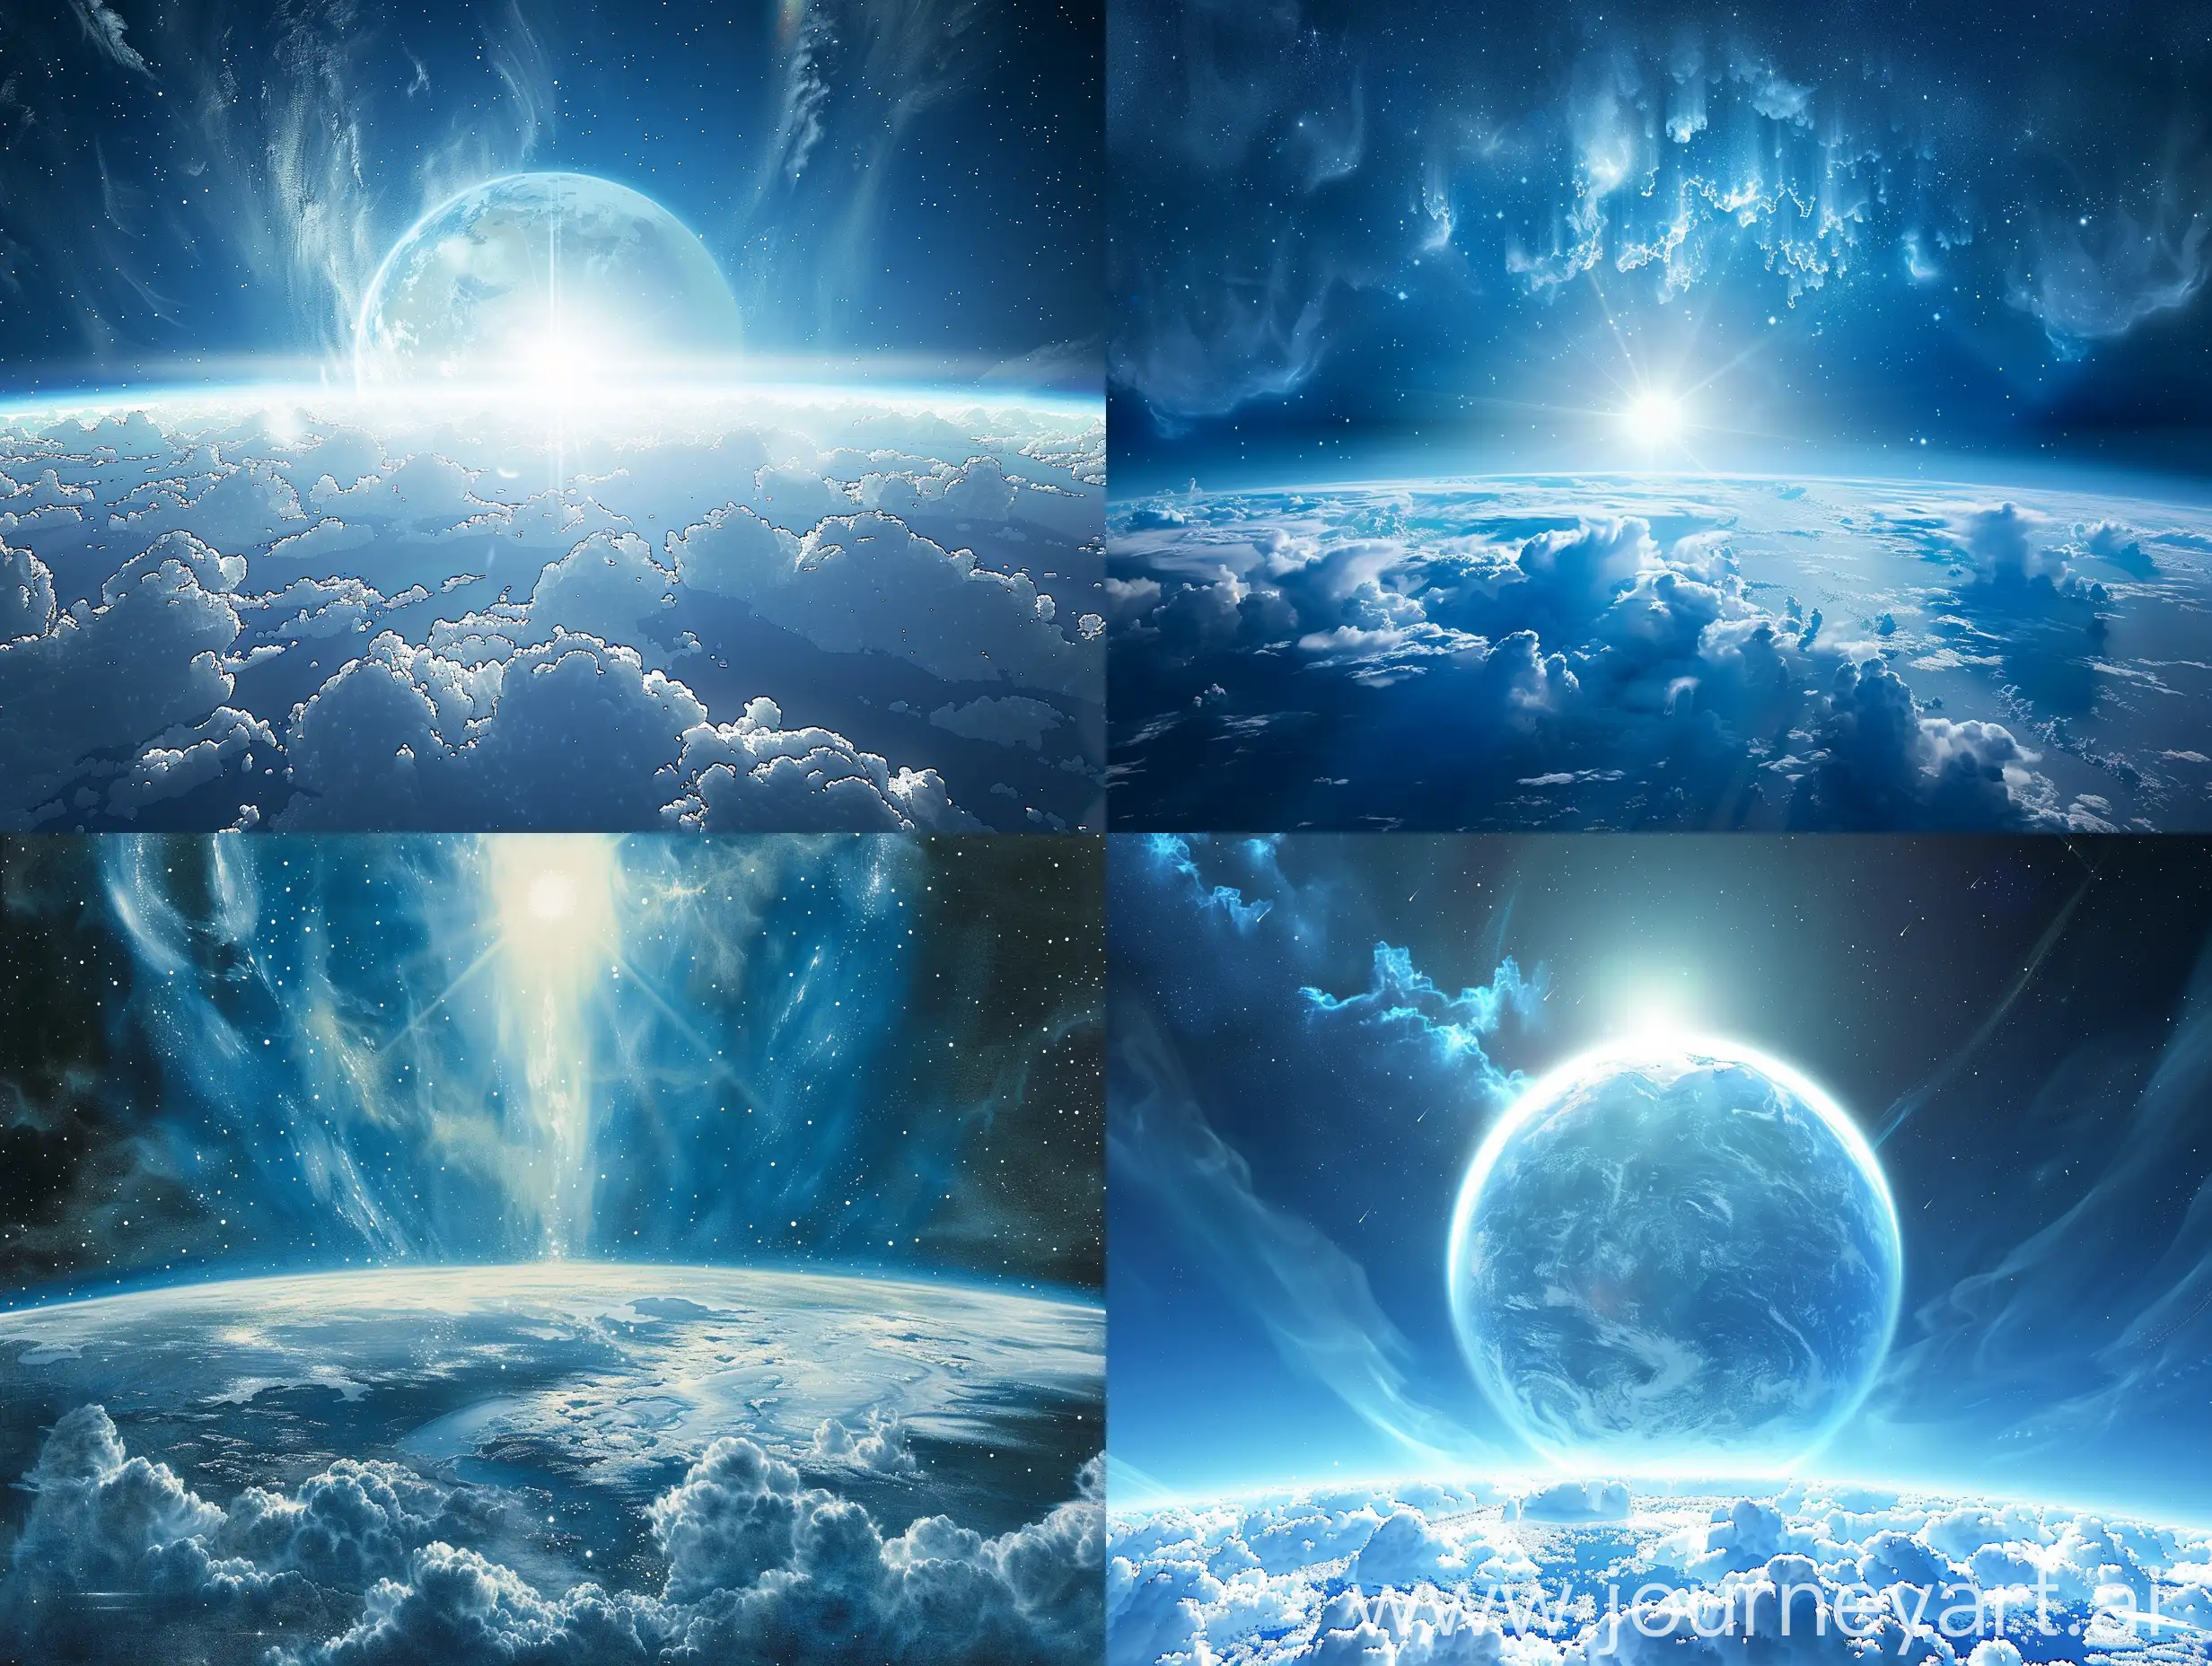  на фоне космос, в сине голубых тонах, сзади снизу земной шар,  облака,, пафосно,, лучит из-за  горизонта, реалистично , в стиле Дюрера